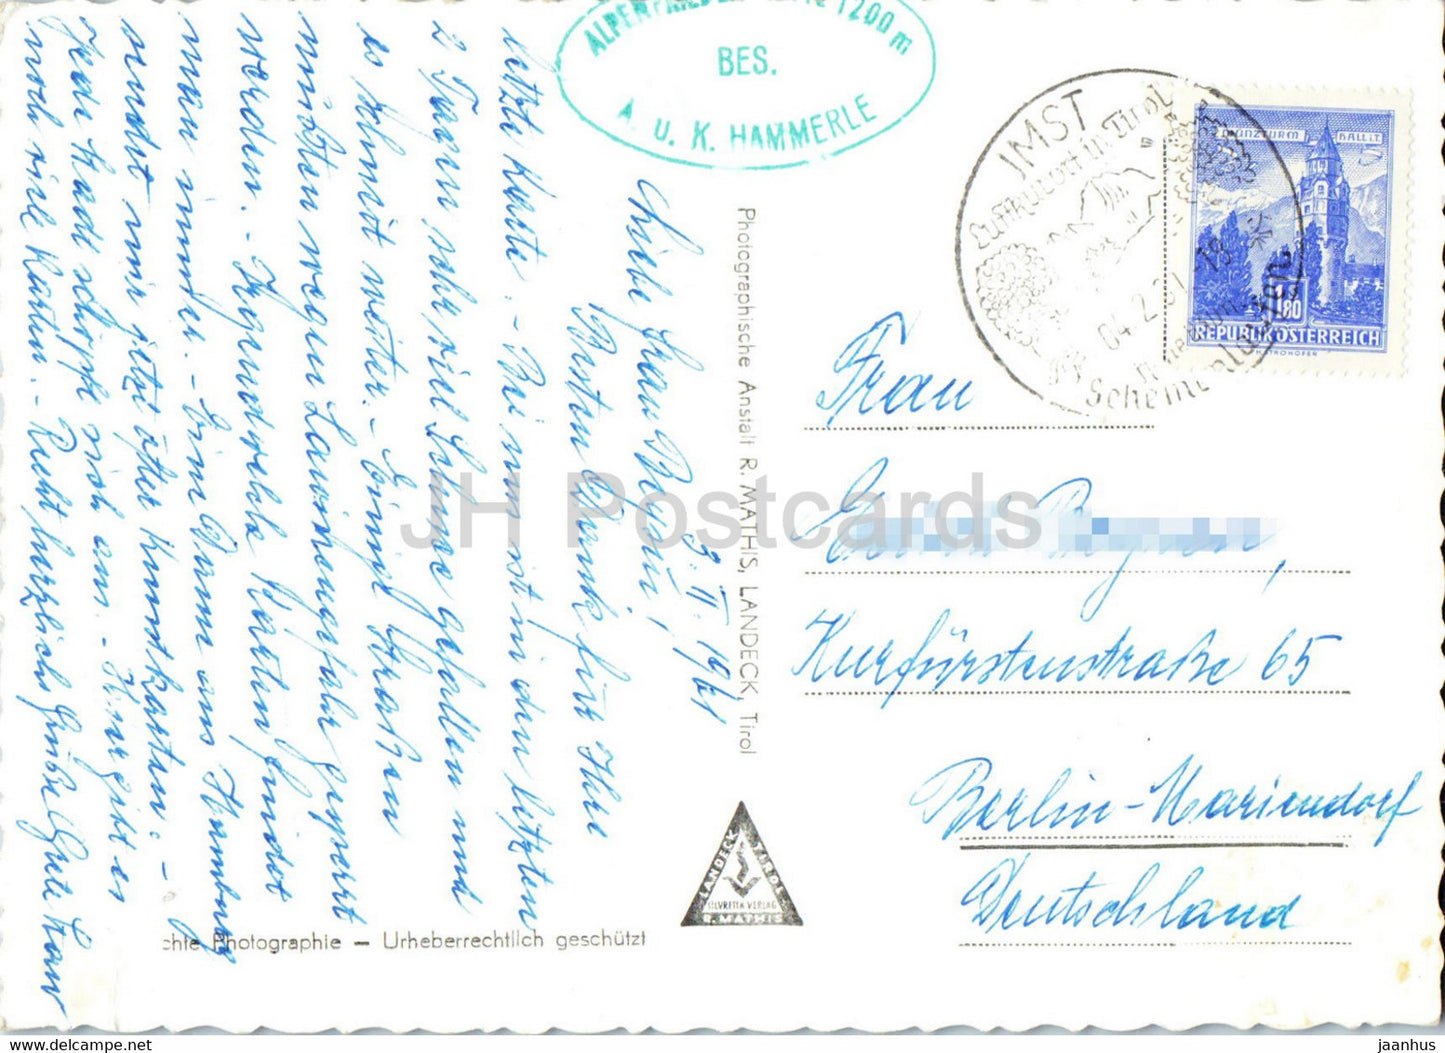 Hammerlehütte mit Miemingergruppe u Kronburg - Tirol - alte Postkarte - 1961 - Österreich - gebraucht